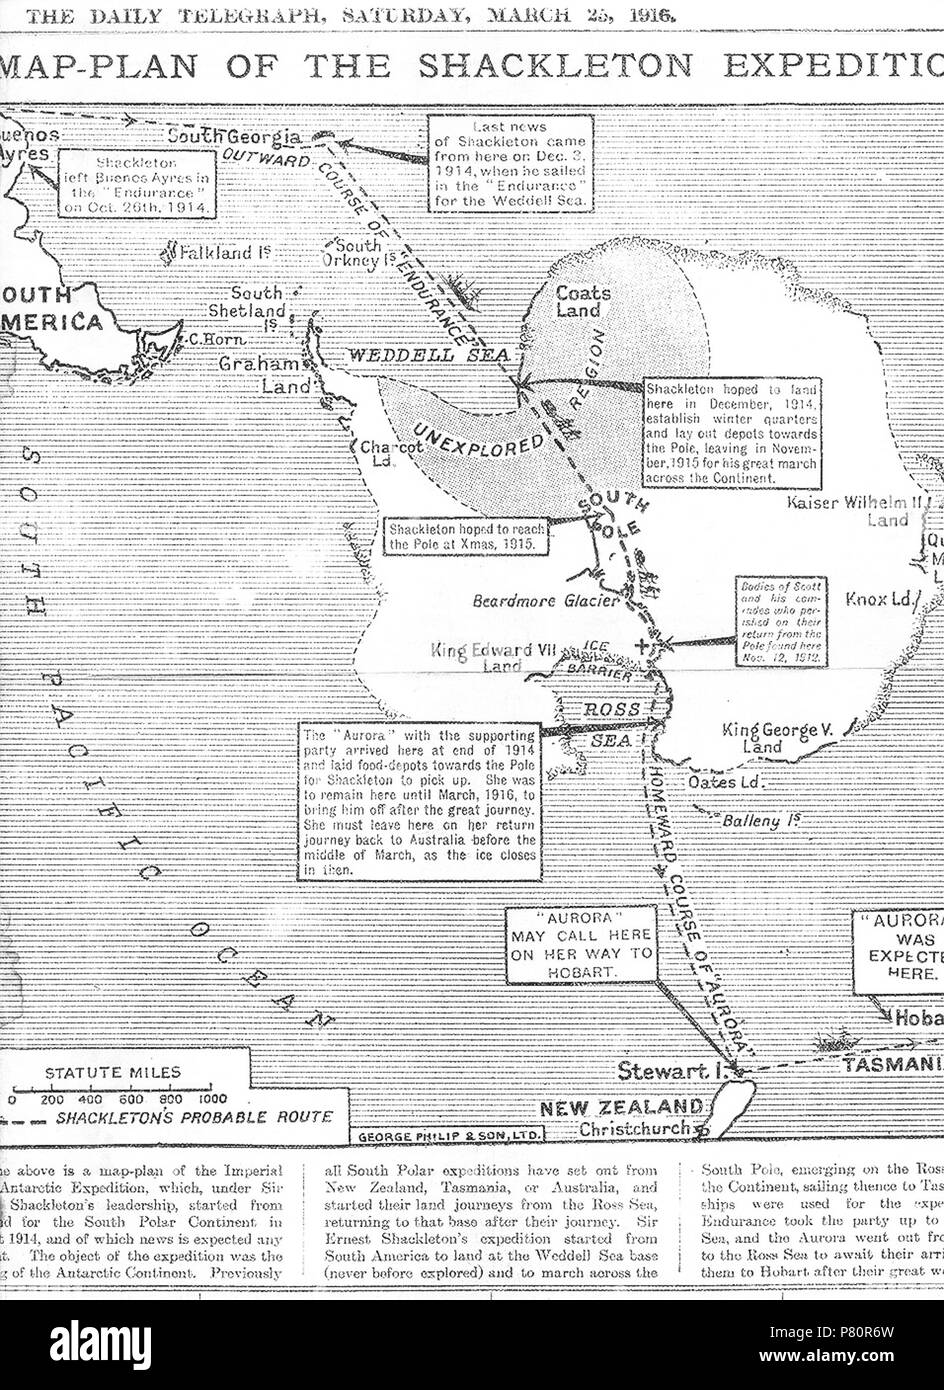 'Le ci-dessus est une carte-plan de l'Expédition transantarctique impériale, qui, sous la direction de Sir Ernest Shackleton, a commencé à partir de l'Angleterre pour le continent polaire du Sud en août 1914, et de nouvelles qui s'attend à tout moment.' . 25 mars 1916 345 Expédition Shackleton plan-plan Banque D'Images